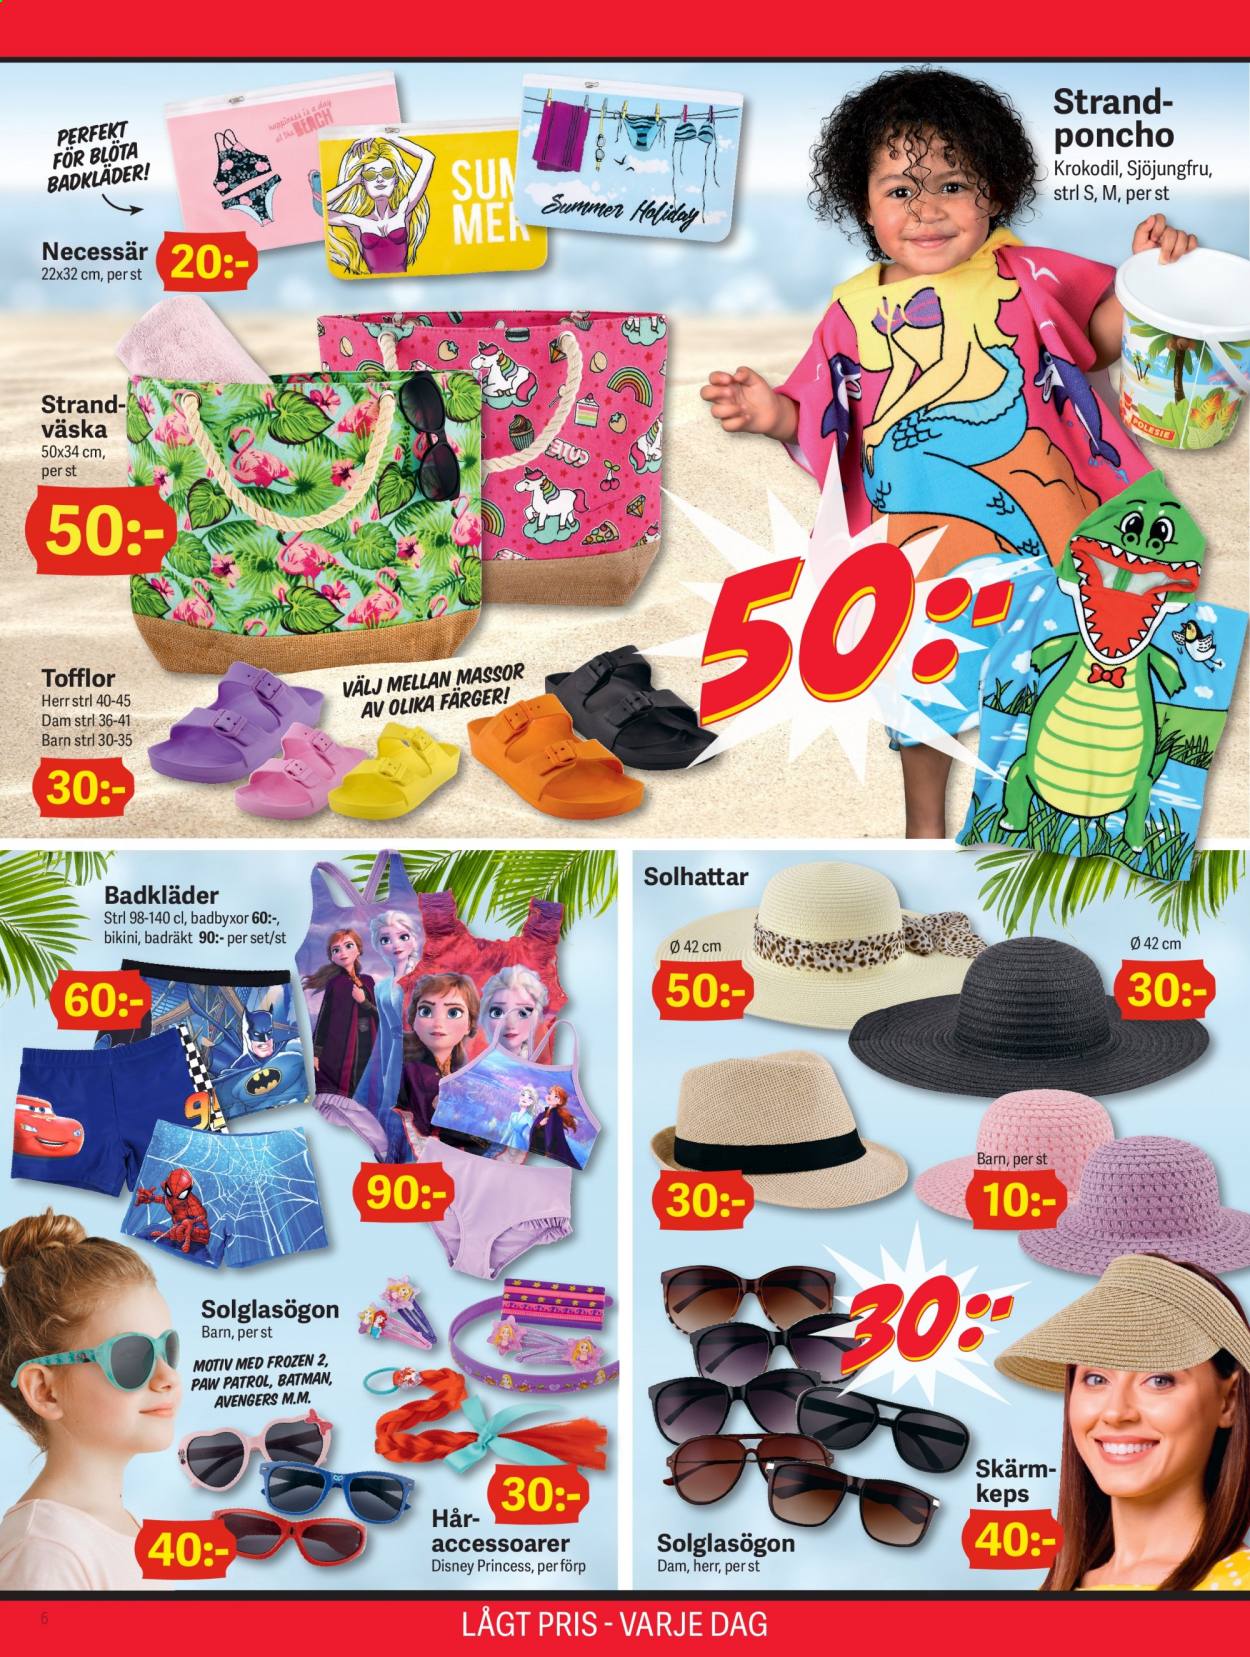 thumbnail - DollarStore reklamblad - 24/5 2021 - 6/6 2021 - varor från reklamblad - Disney, Paw Patrol, tofflor, Avengers, Frozen, bikini, keps, väska, solglasögon, krokodil. Sida 6.